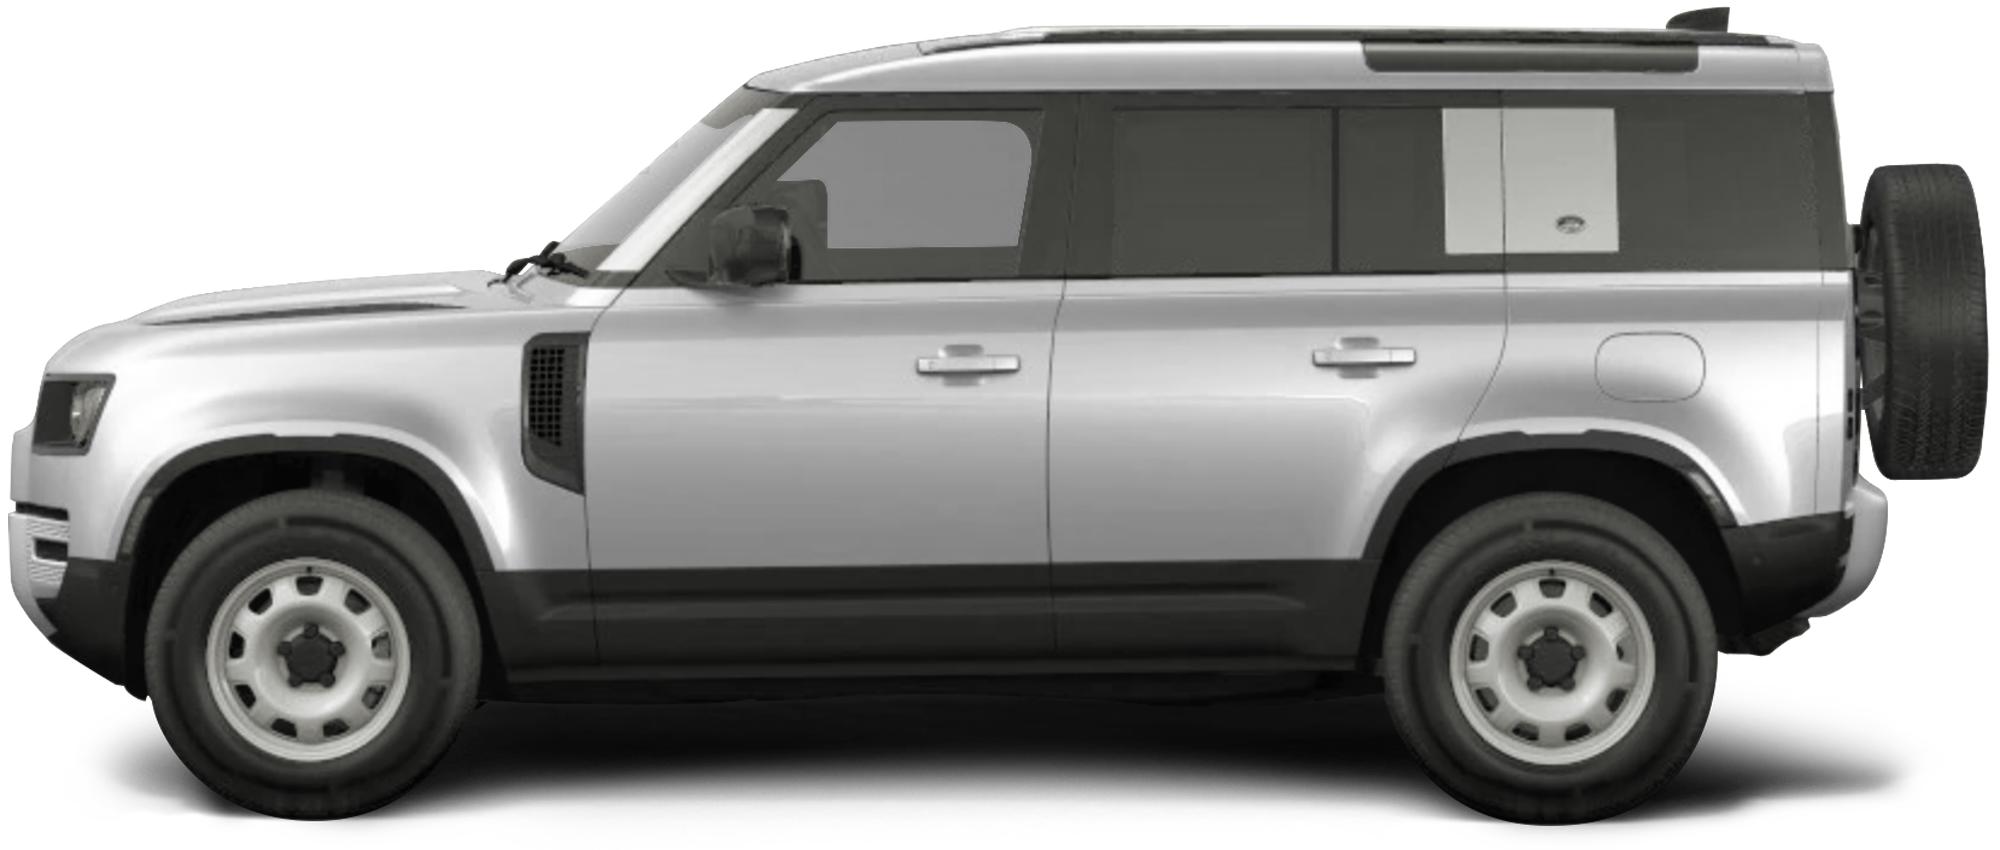 2020 Land Rover Defender SUV Digital Showroom | Land Rover San ...